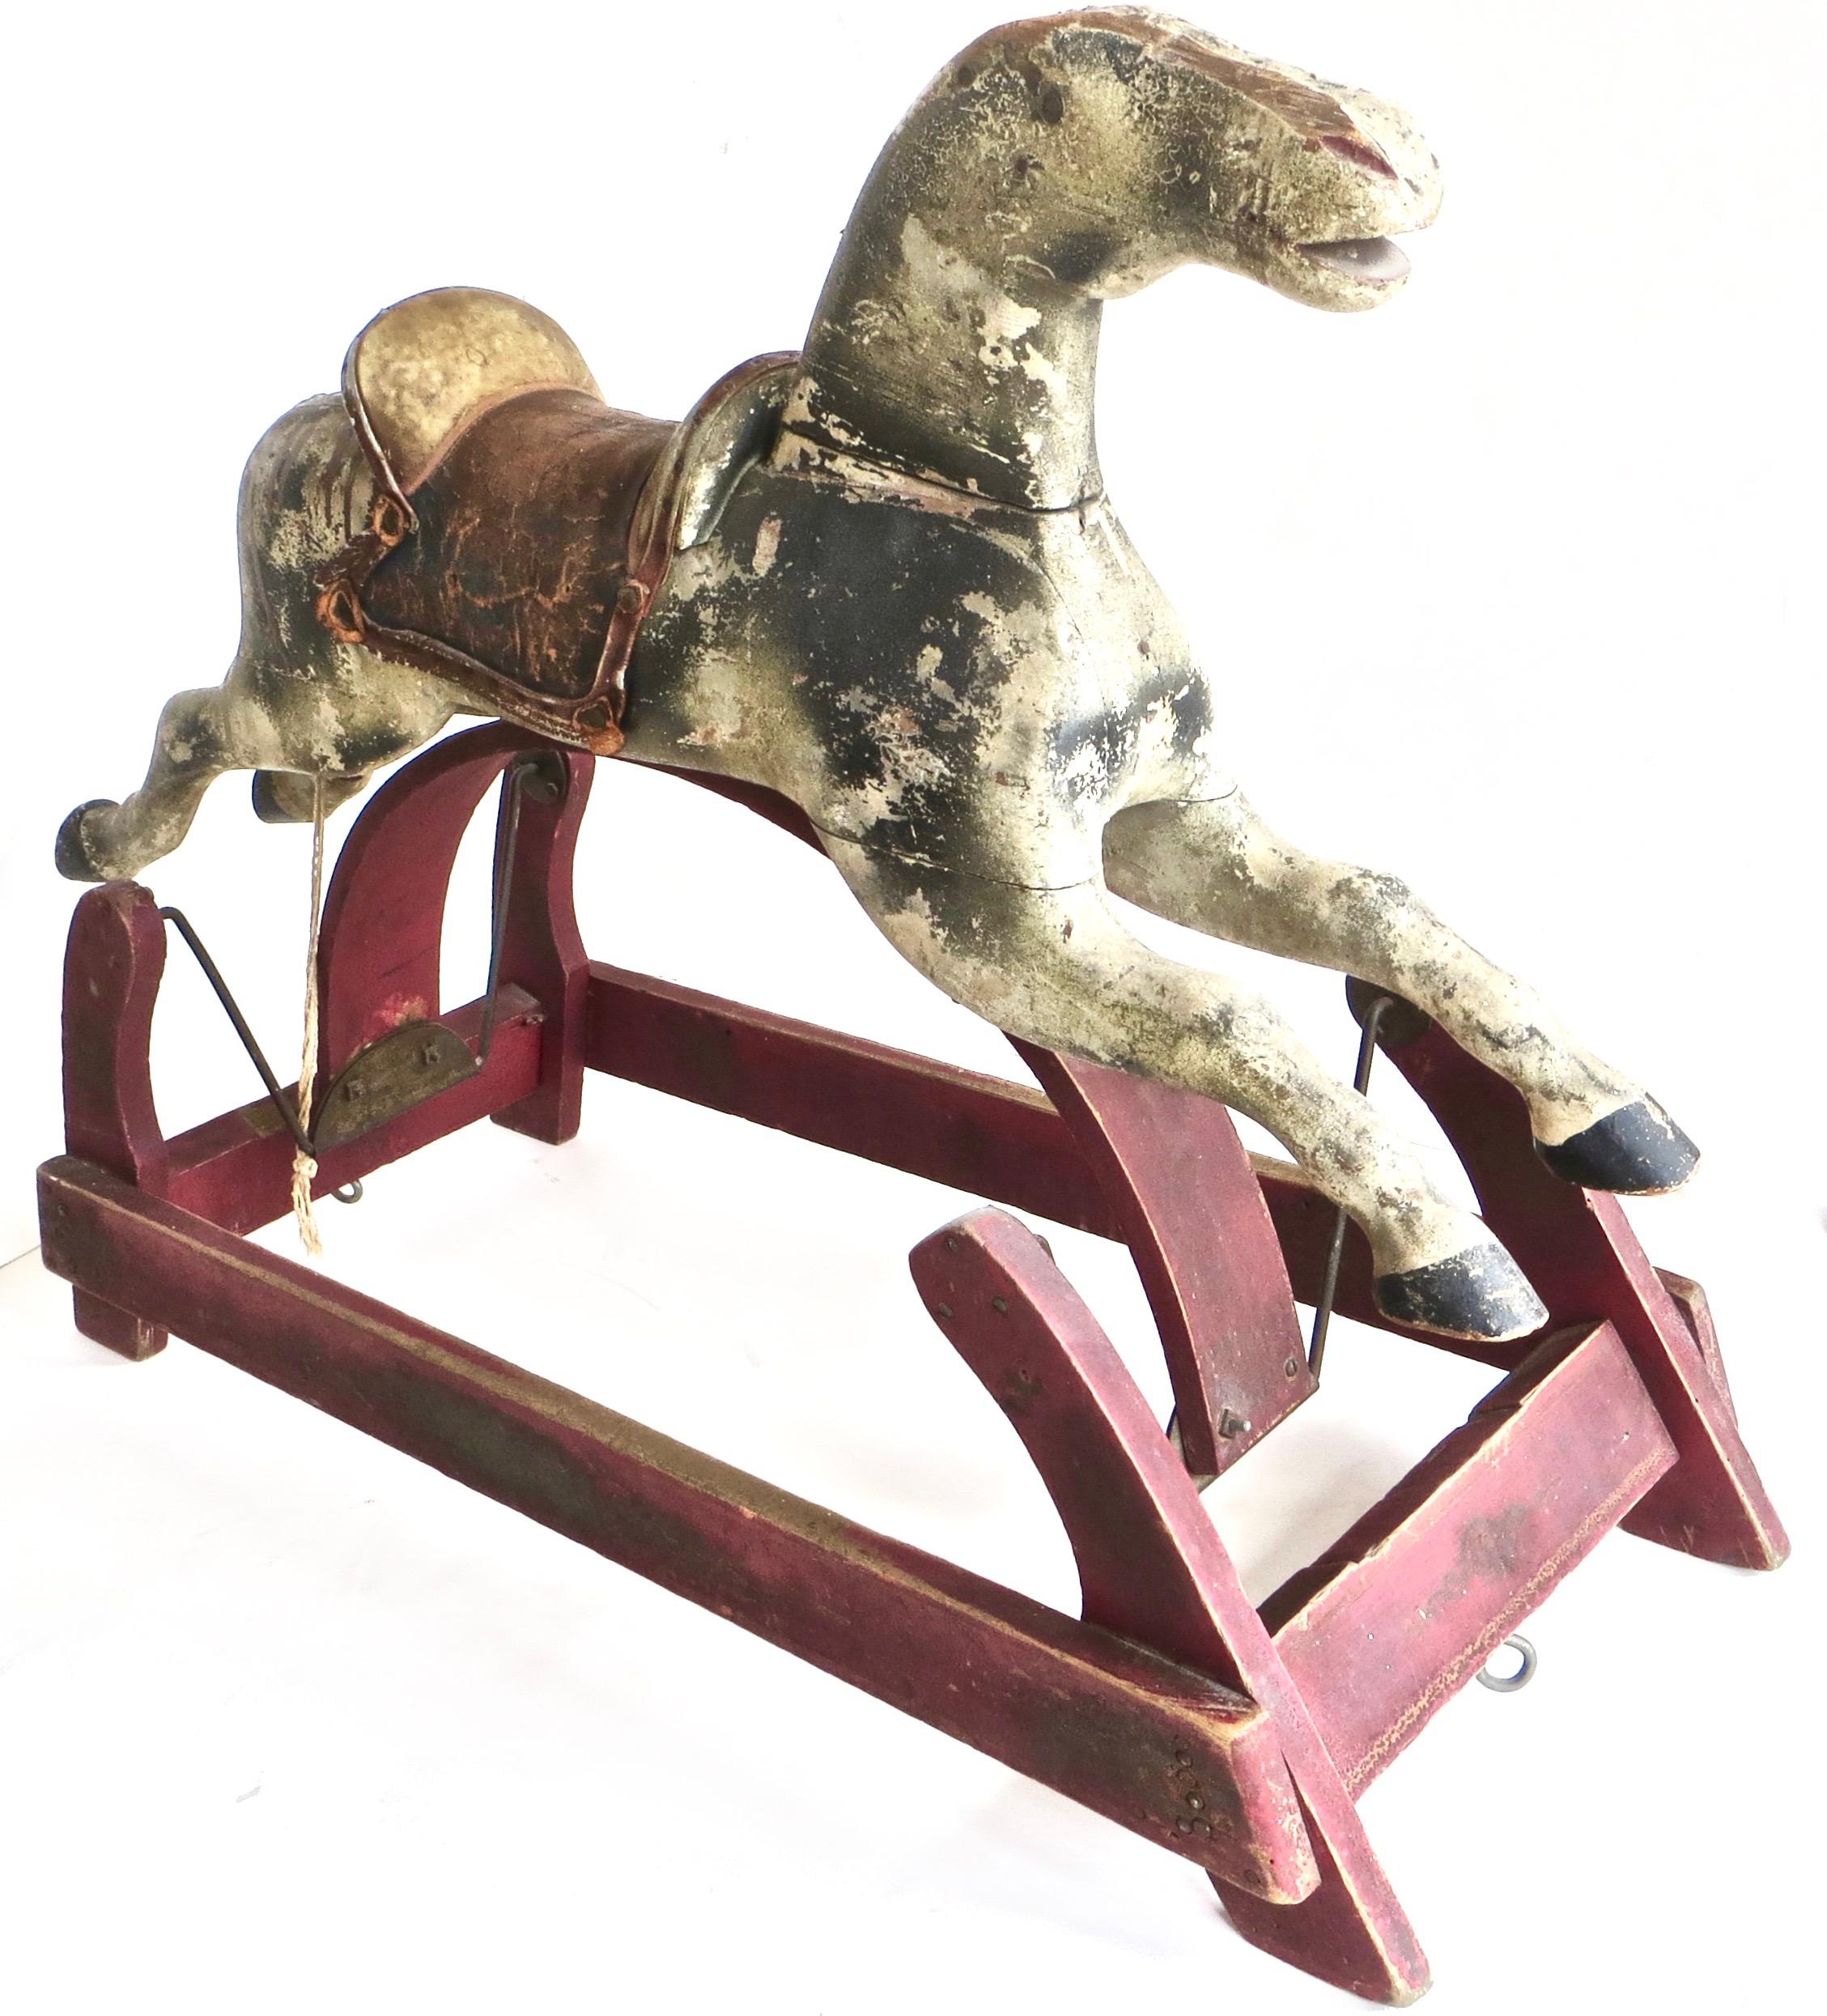 De fabrication américaine, vers 1875, cet authentique cheval à bascule pour enfants est sculpté à la main dans du bois dur et possède une selle en cuir fabriquée à la main. L'enfant assis peut se balancer d'avant en arrière lorsqu'une autre personne